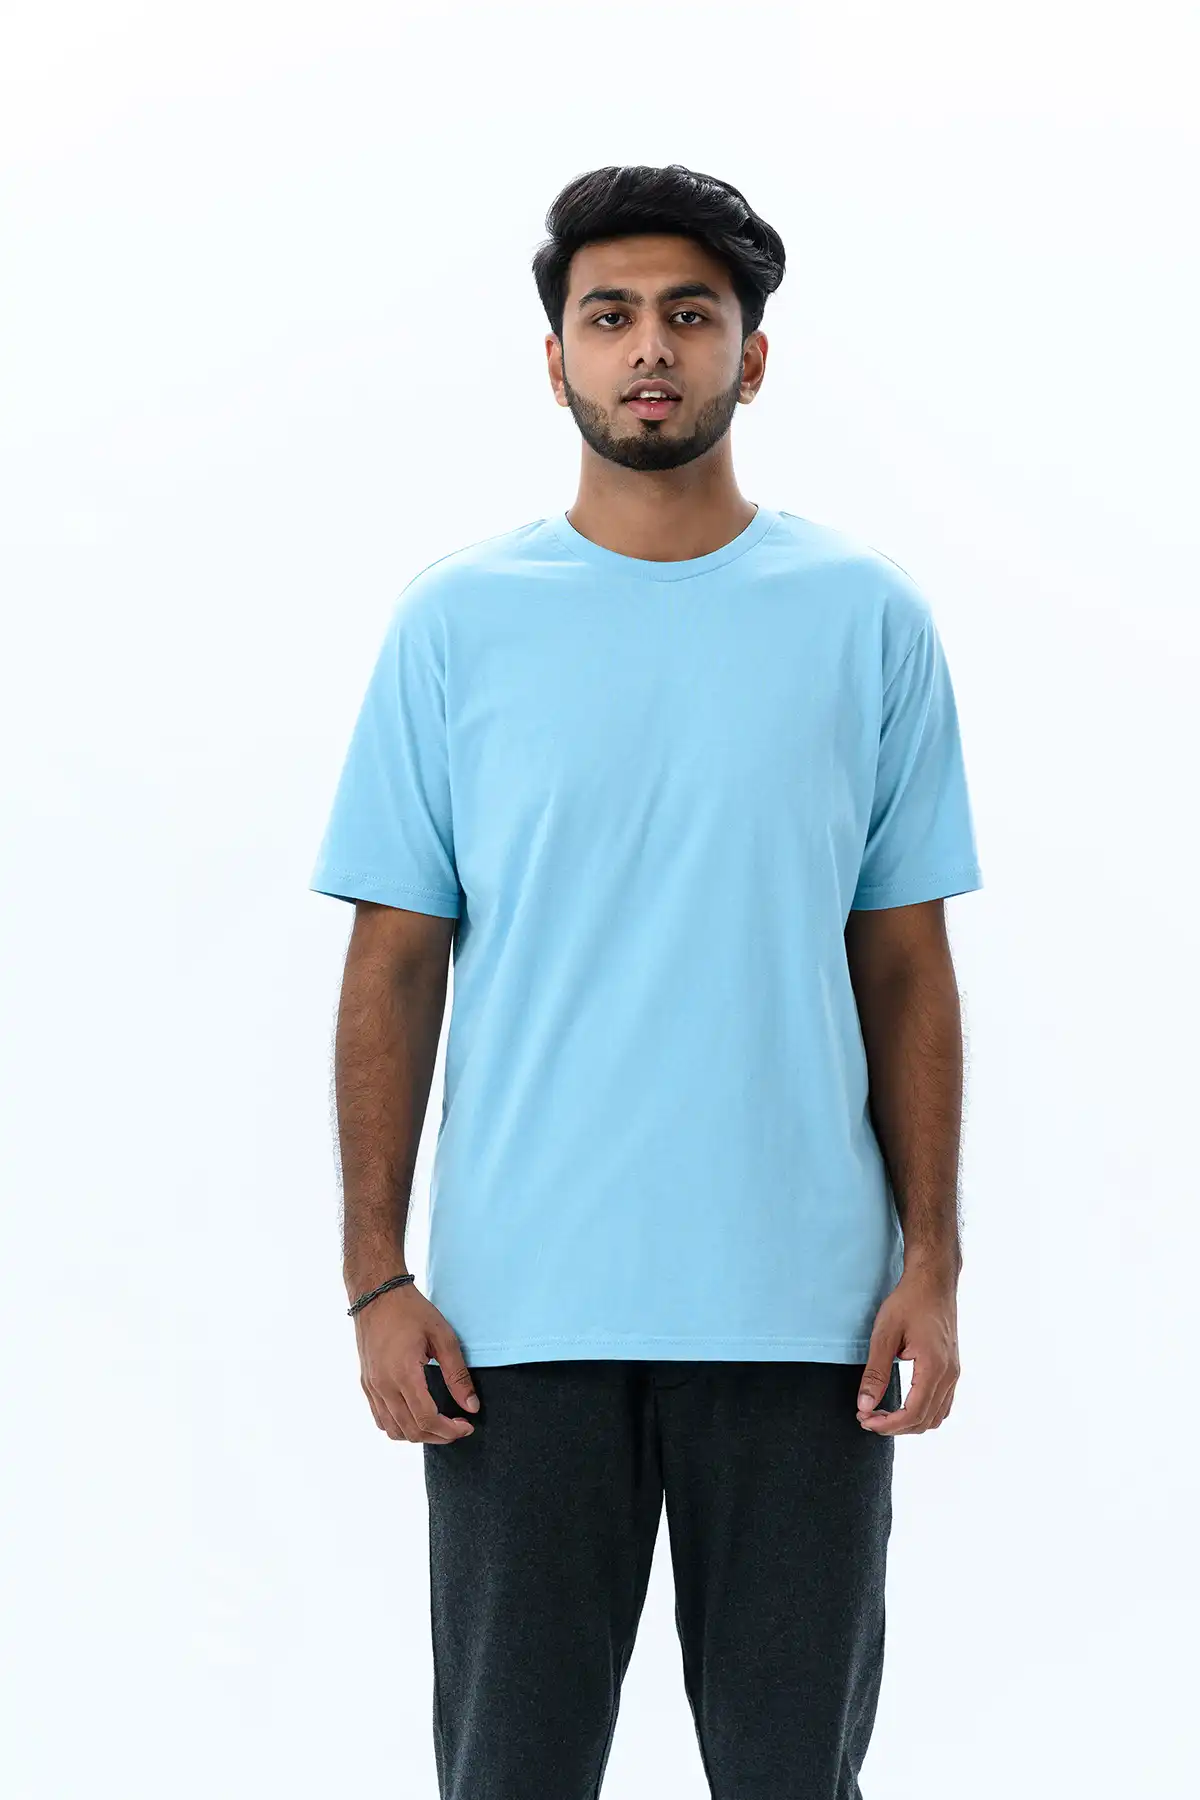 Unisex Crew Neck Cotton T-Shirt - Sky Blue